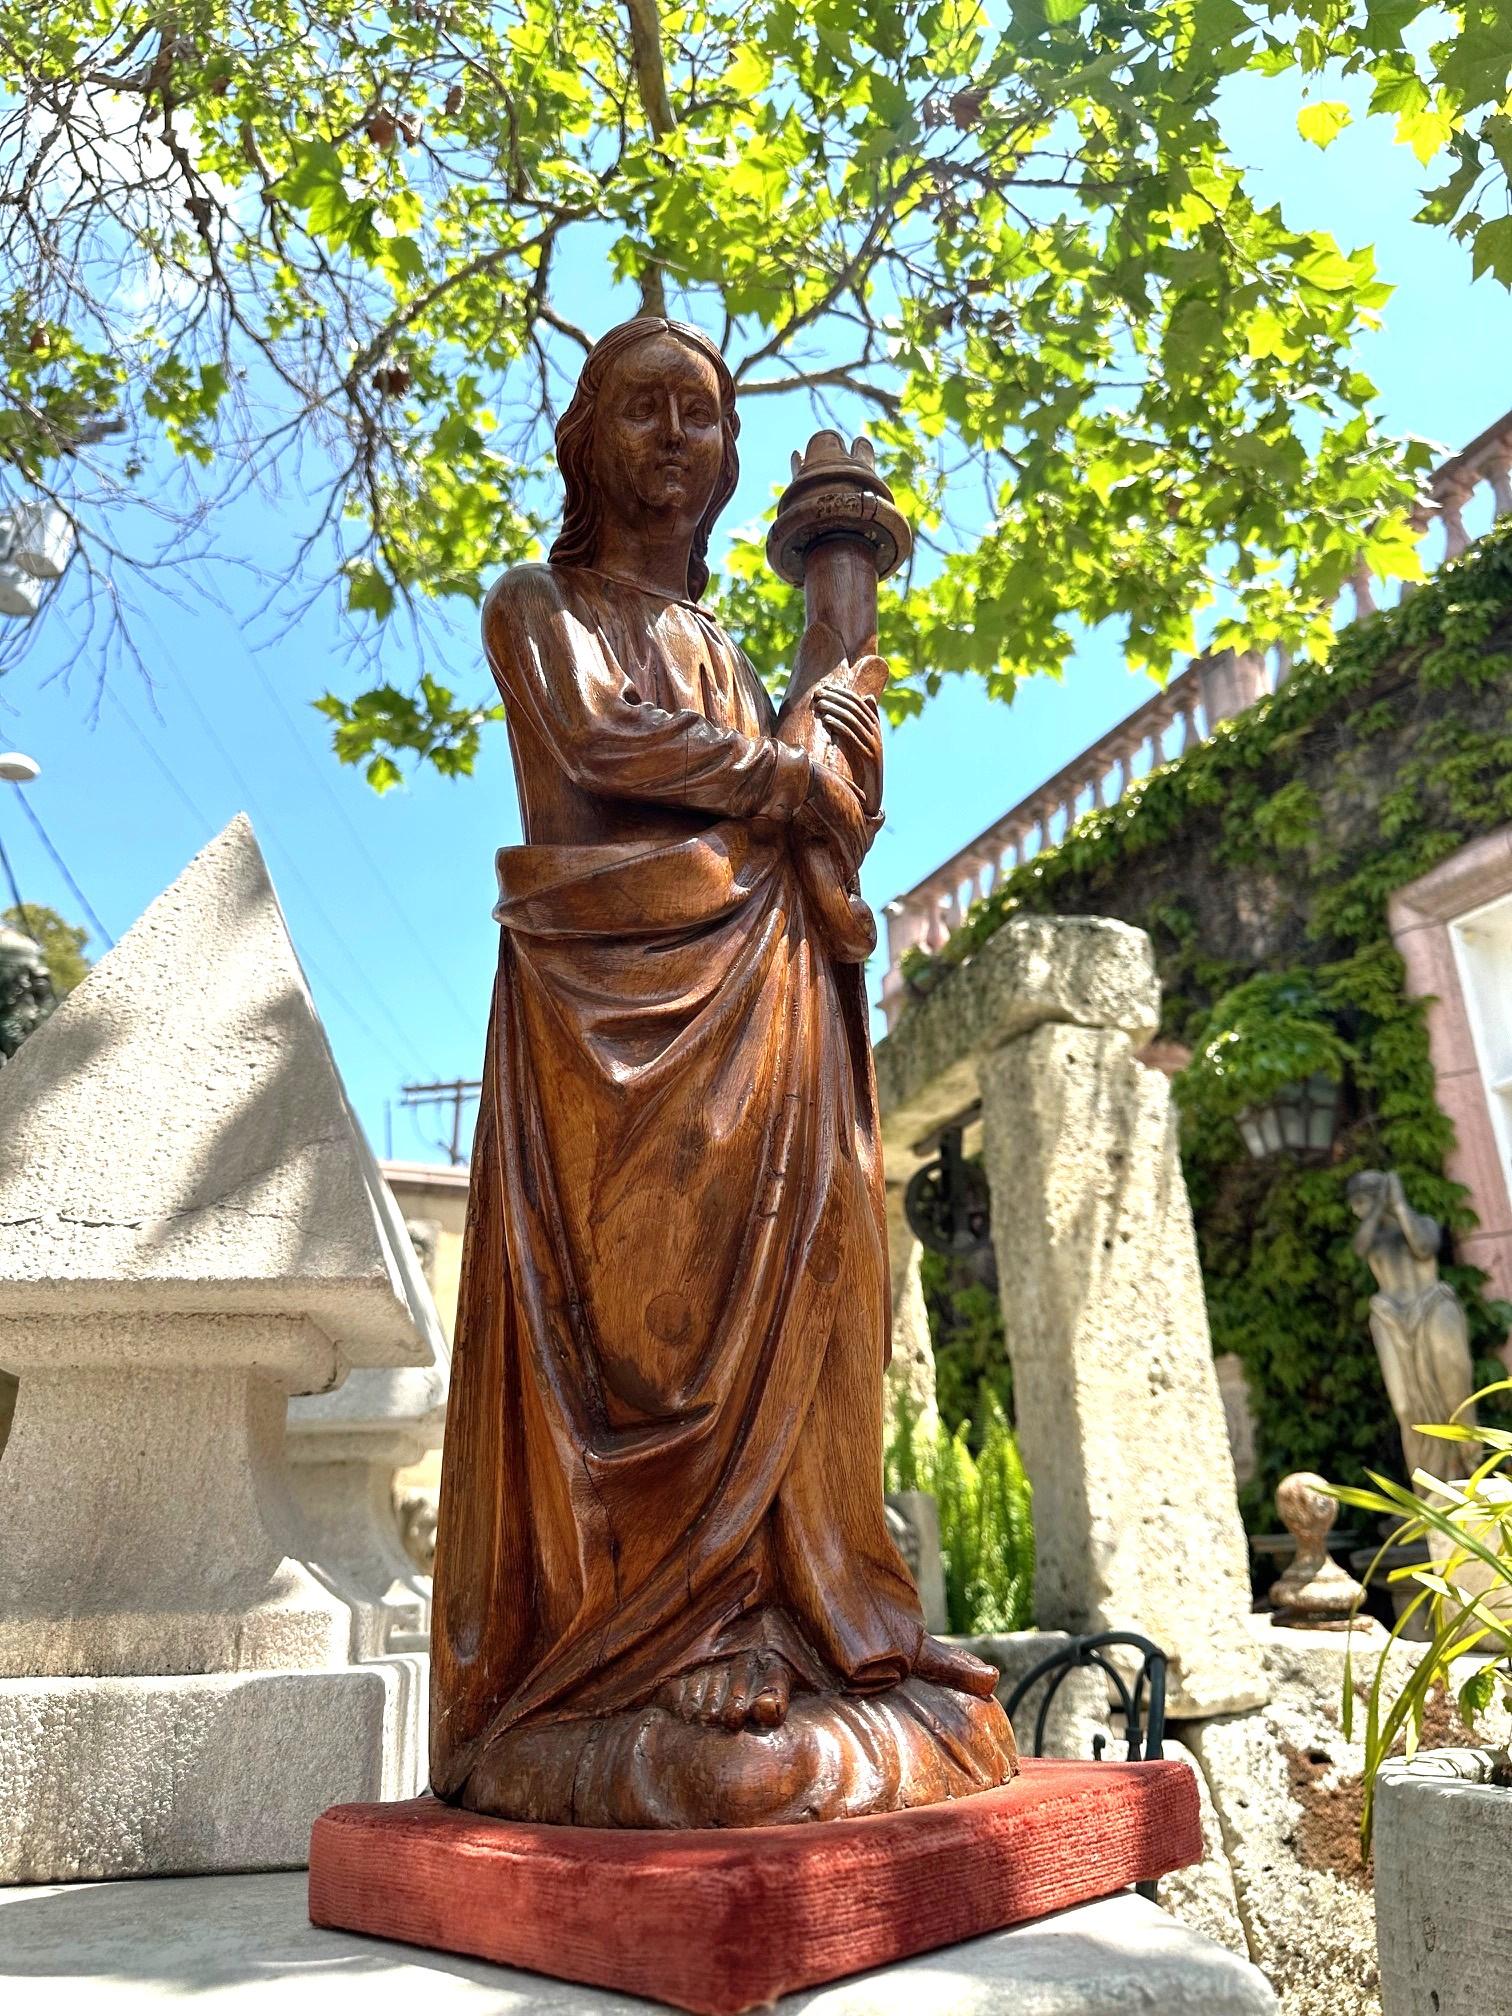 Handgeschnitzte Holzfigur Skulptur Engel Statue Antiquitäten Los Angeles Kalifornien Exquisite 19. Jahrhundert handgeschnitzte Holzfigur Statue eines Engels, der eine Fackel hält (abnehmbarer Kerzenständer). Die Statuen zeigen eindrucksvoll